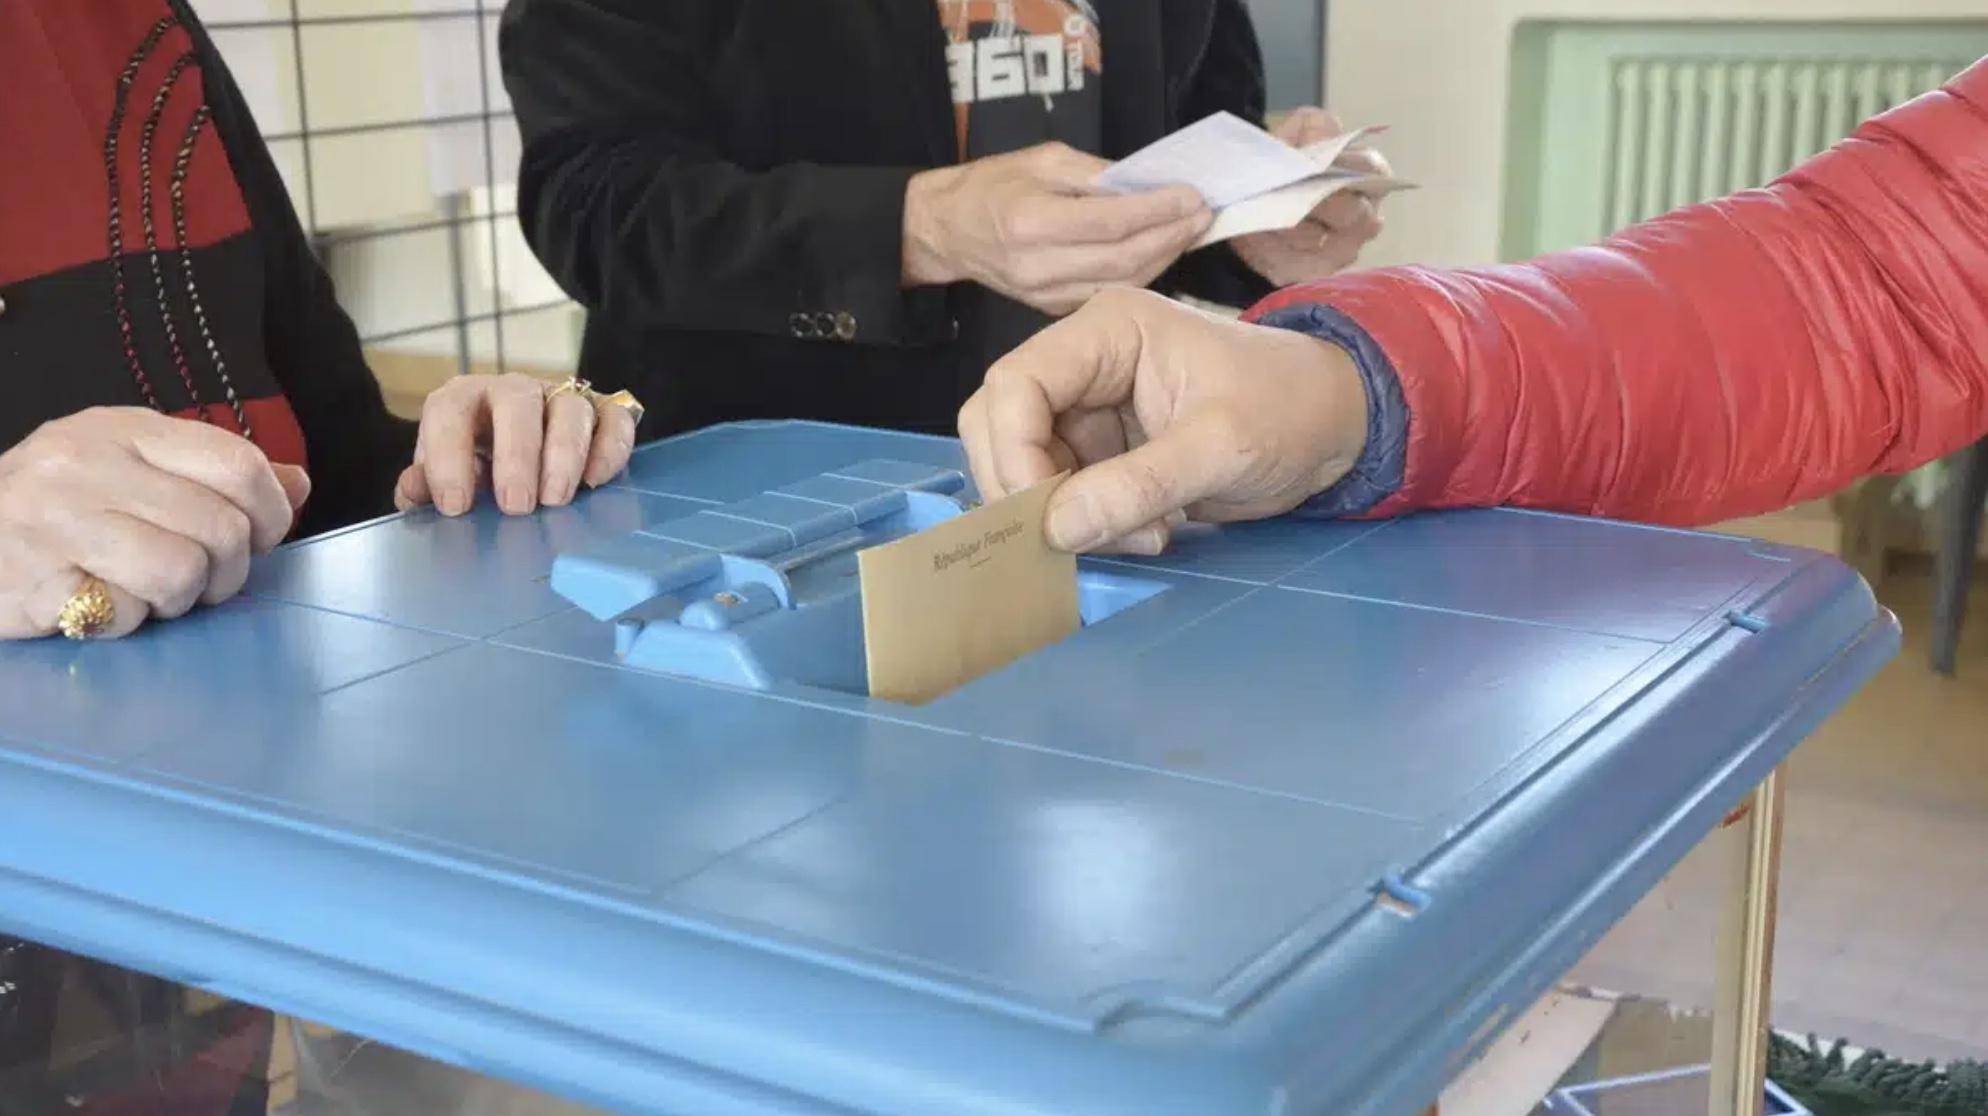 Bureau de vote de Marmesse : une suppression toujours pas digérée